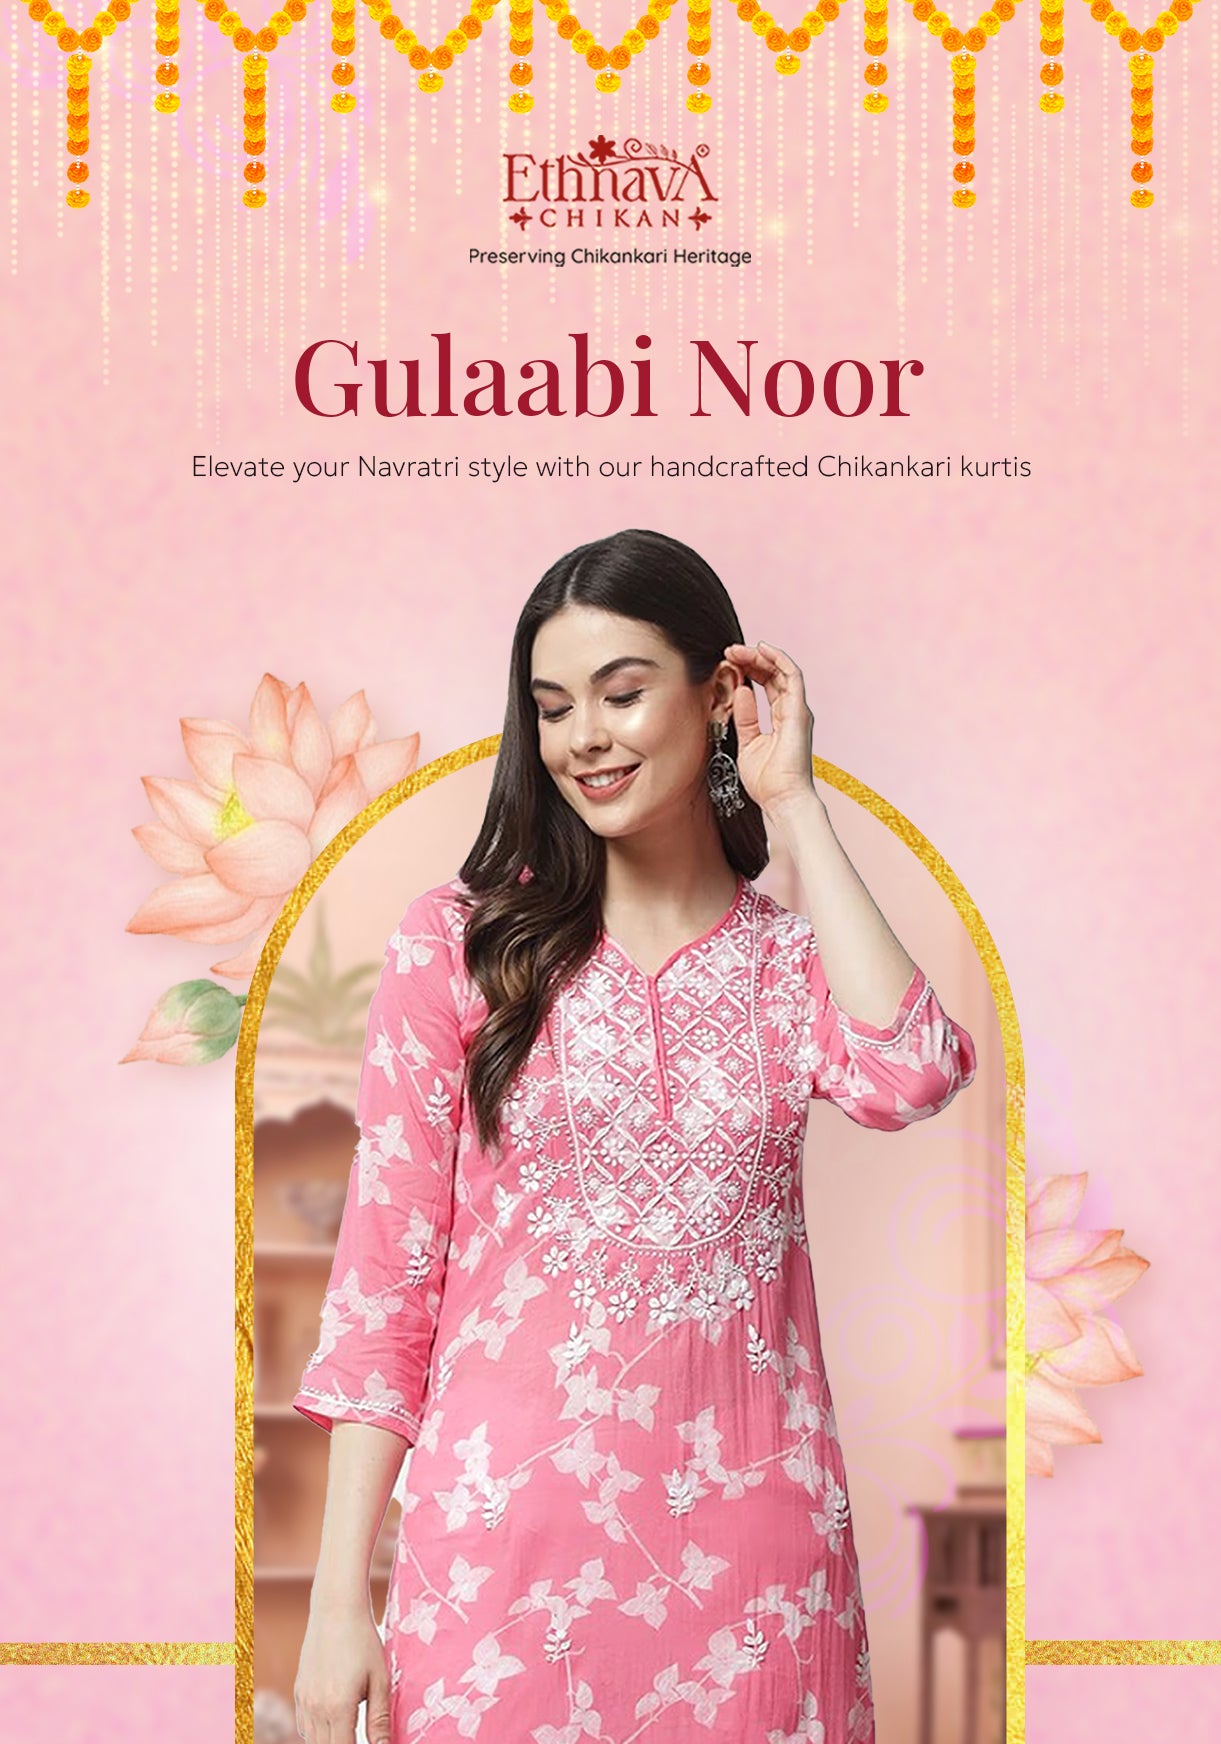 Gulaabi Noor